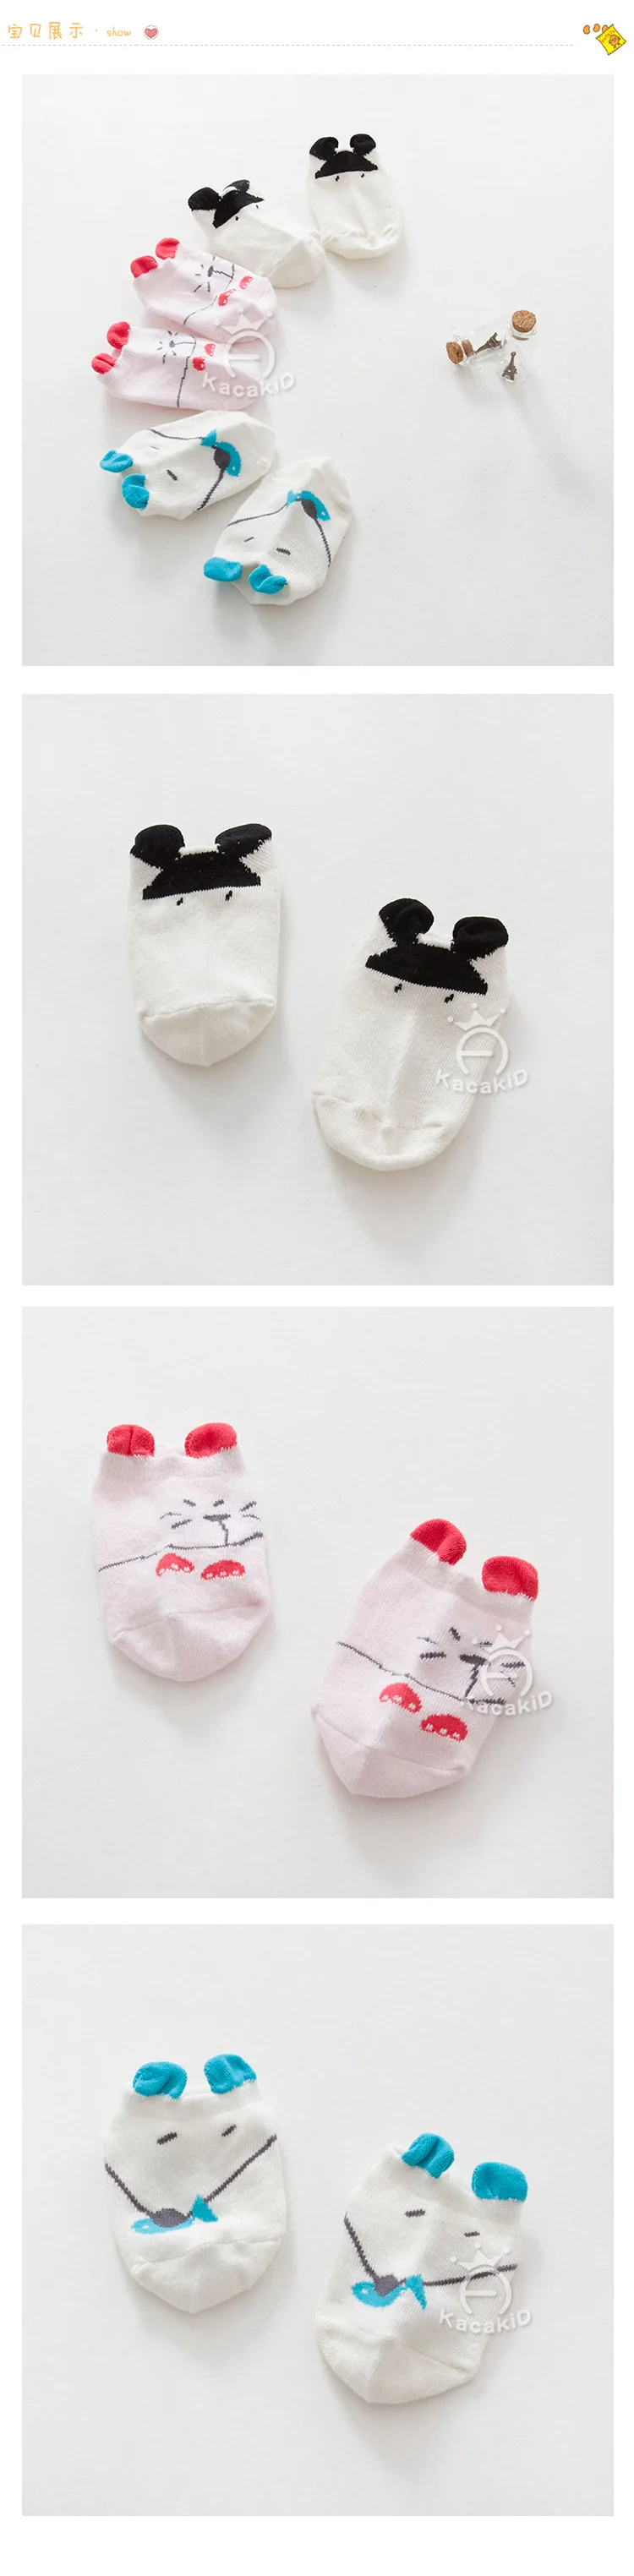 Kacakid/новые детские милые Мышь Носки для девочек 1 пара носки для новорожденных мальчиков и девочек Носки для девочек хлопковые носки